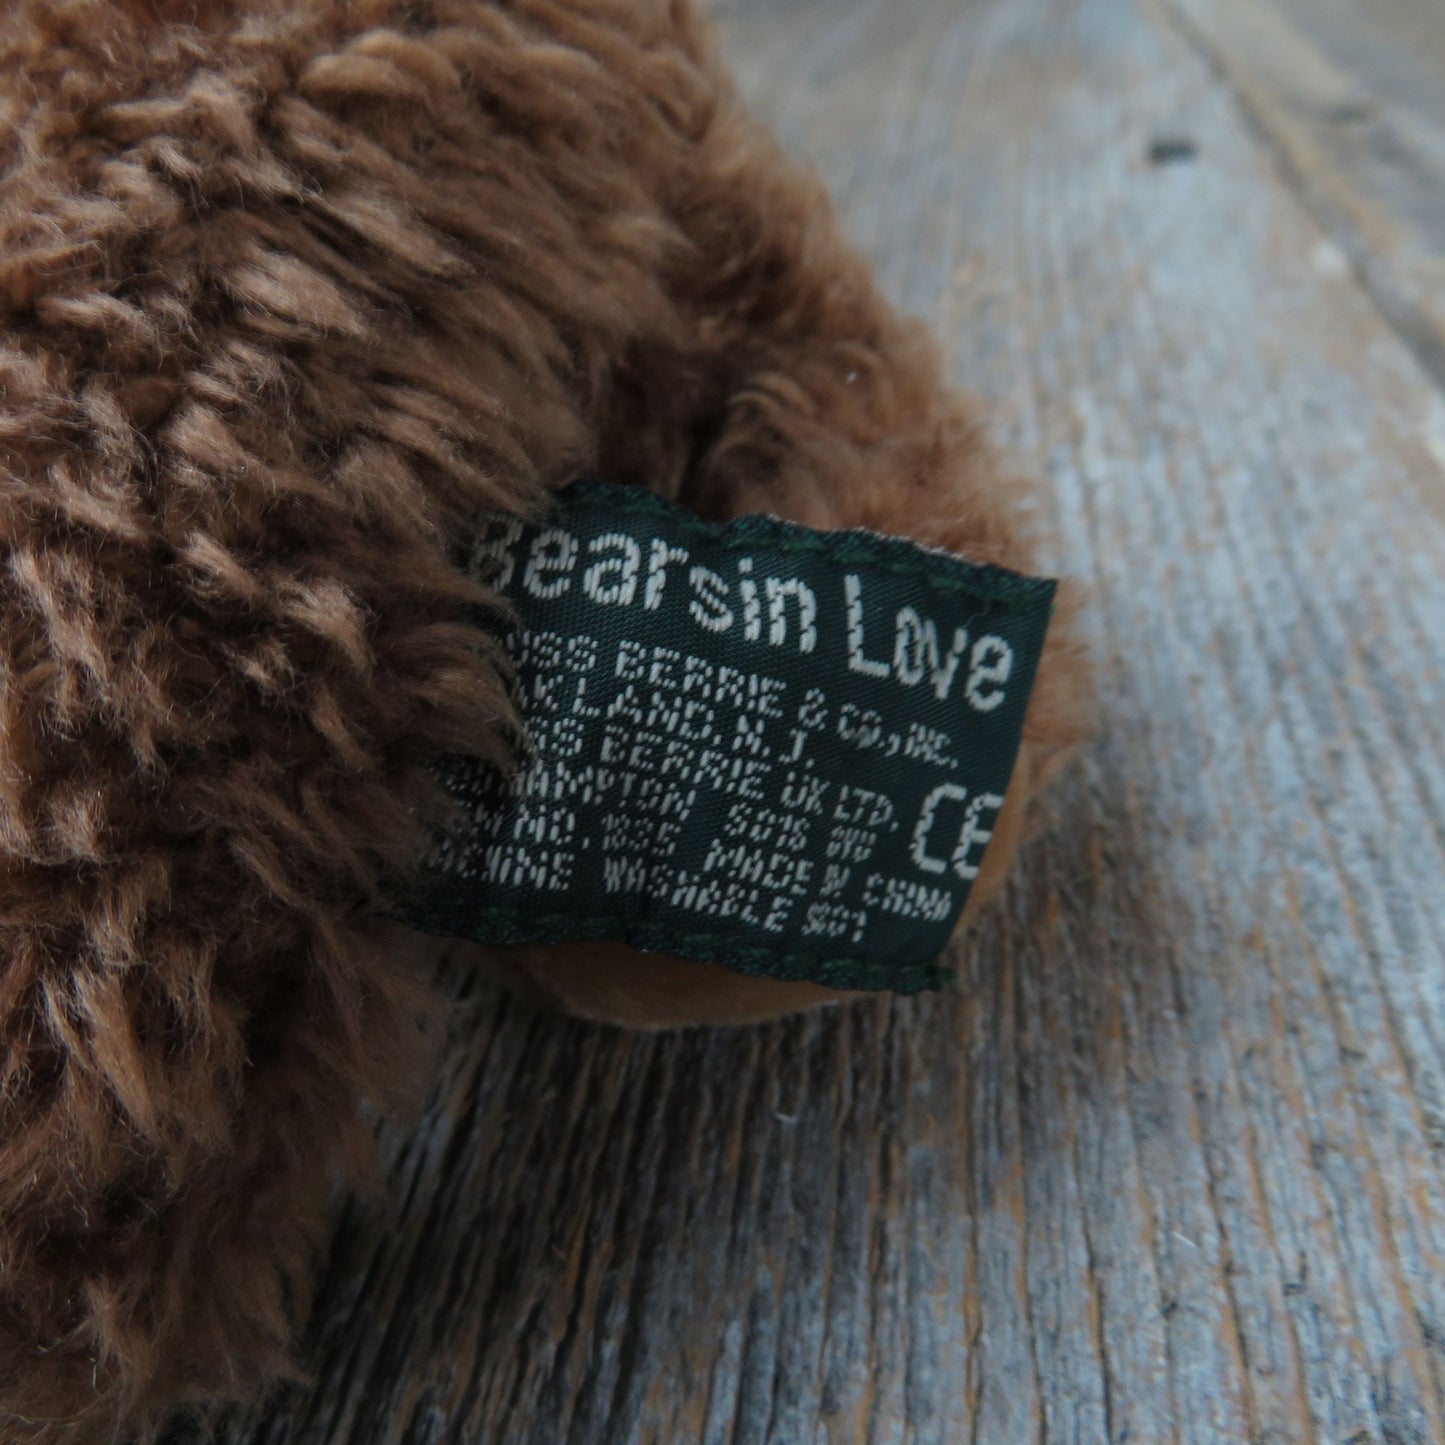 Brown Bear Plush Beanie Russ Bearsin Love Stuffed Animal Small Plaid Bow